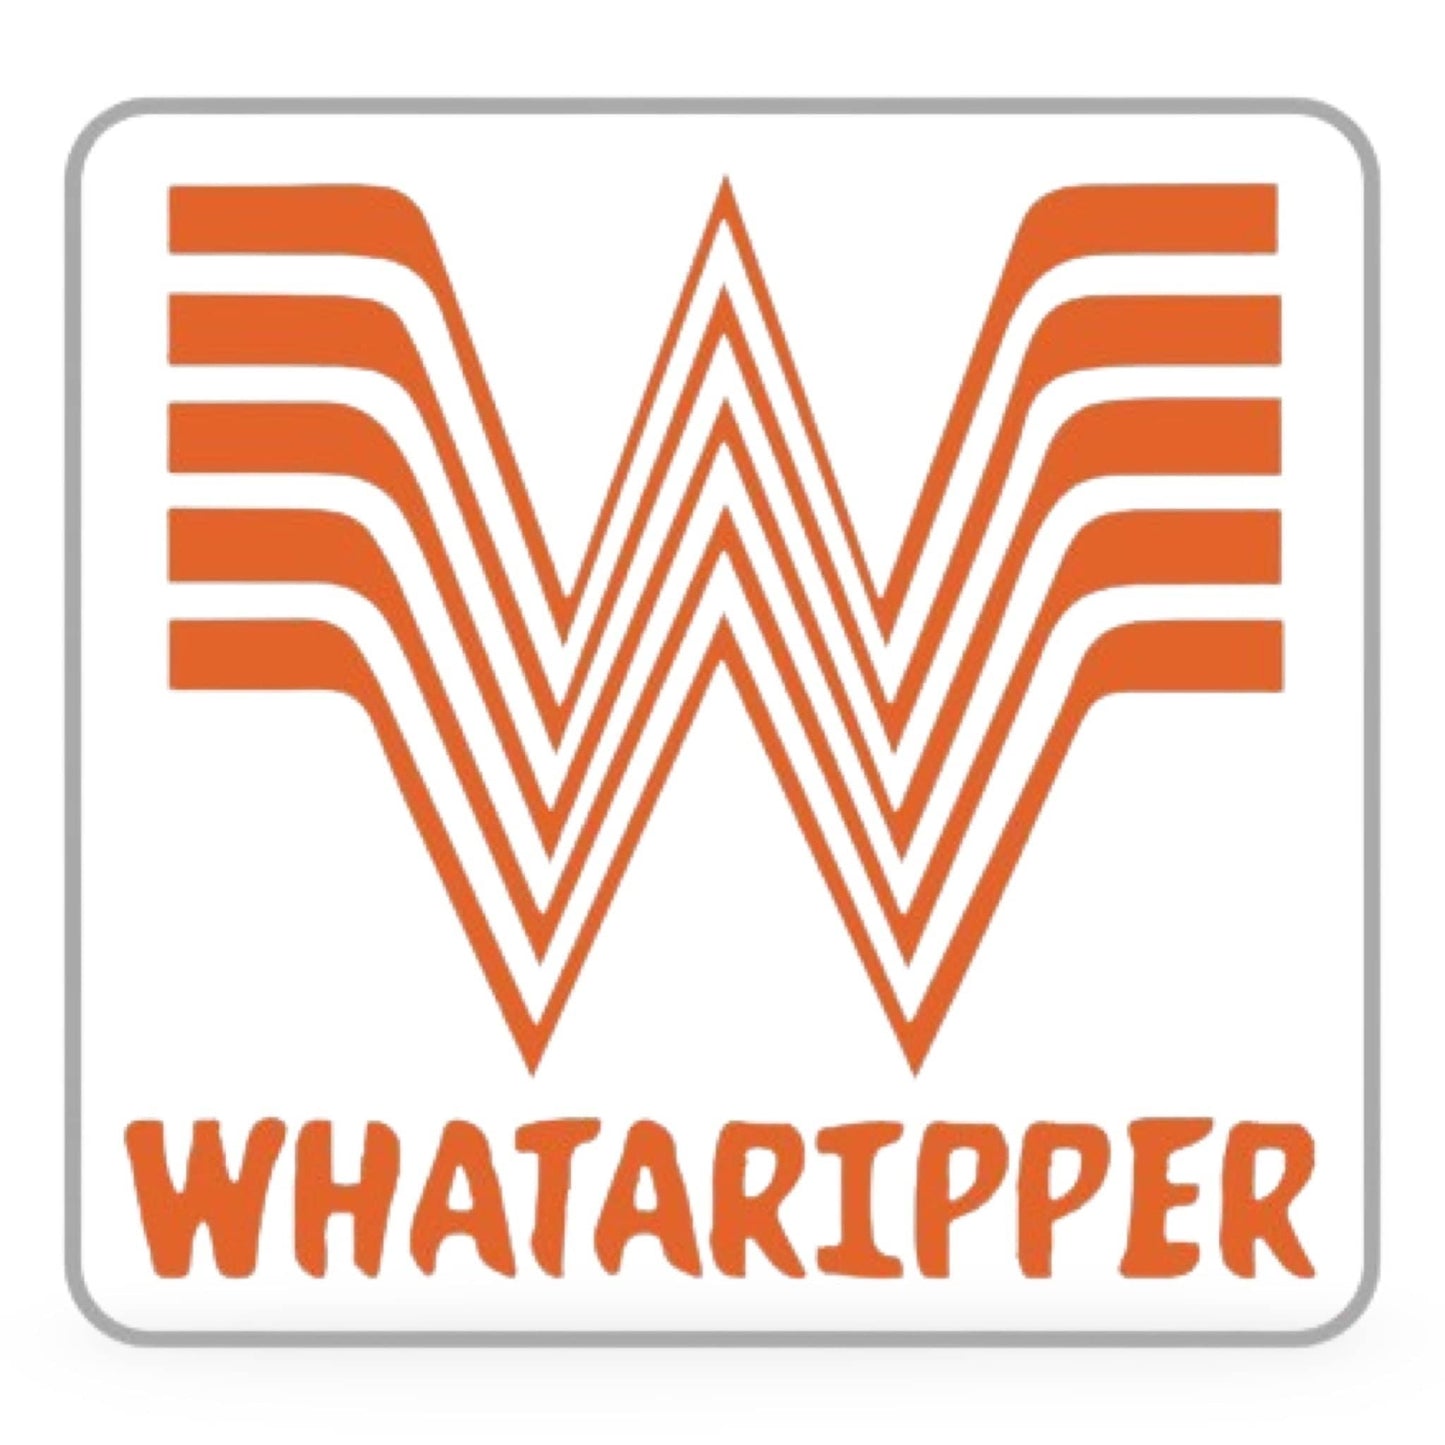 Chief Miller Stickers Whataripper Sticker Apparel